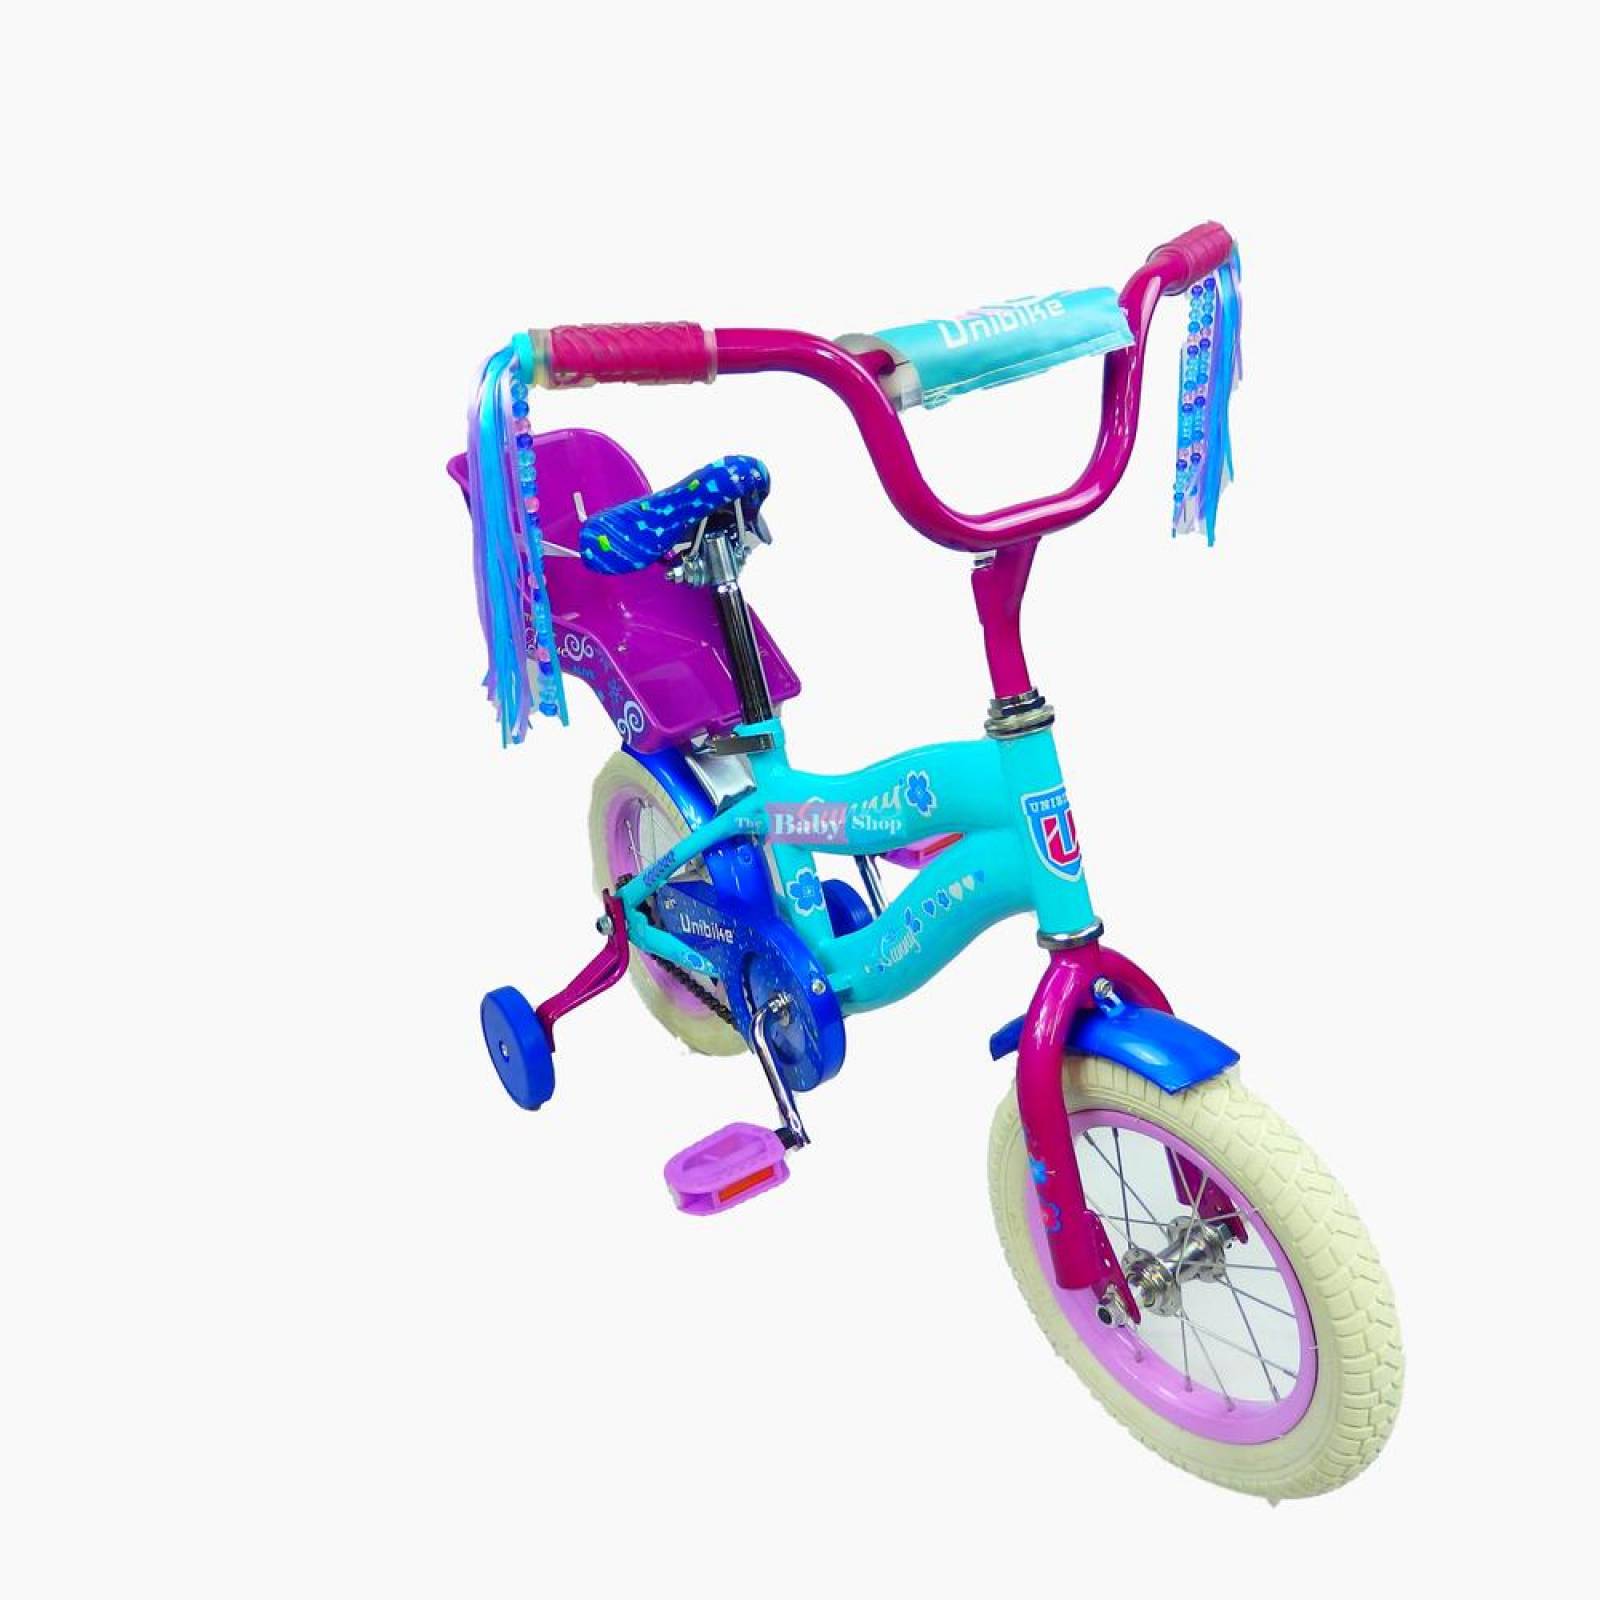 Bicicleta Infantil r12 Rodada para niña Barata con Portamuñeca 